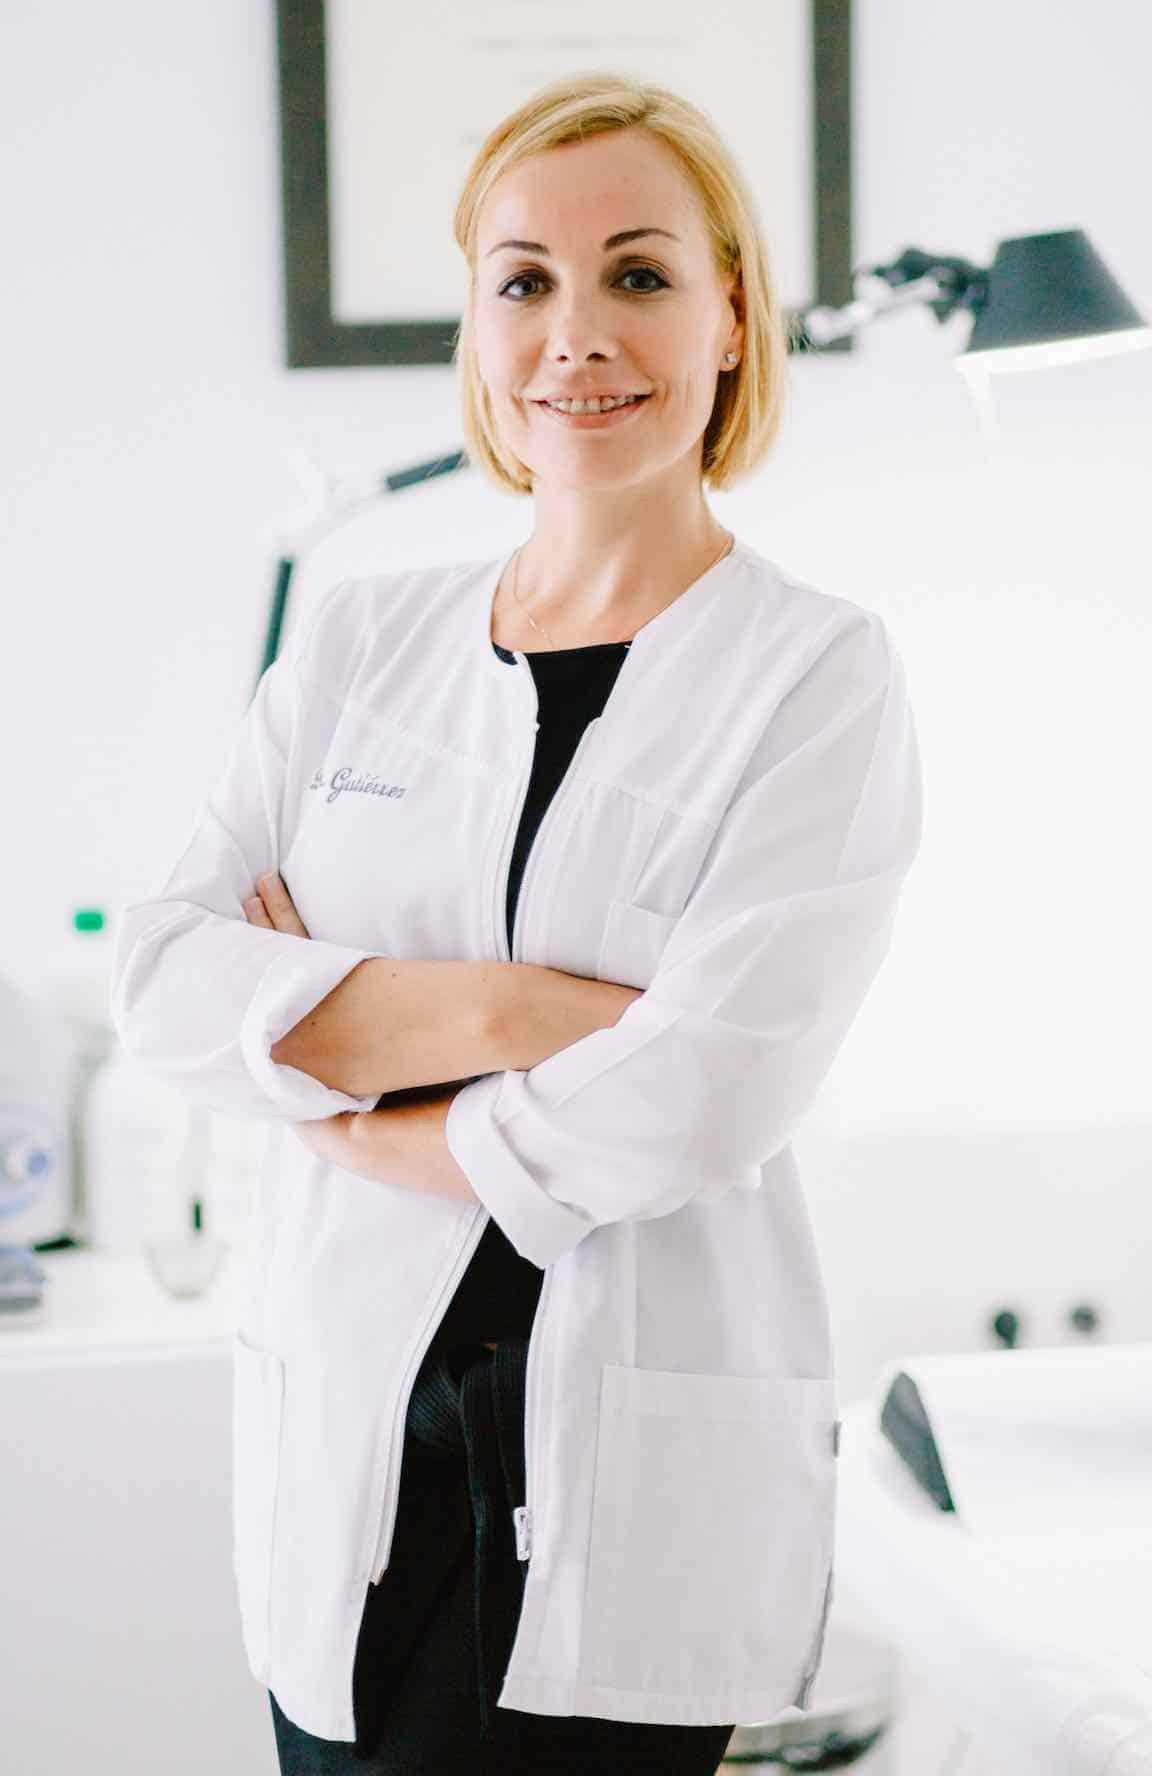 Terapia Clínica Liquenia para el Liquen Escleroso Vulvar de la Dra. Patricia Gutiérrez Ontalvilla (Cirujana Plástica)